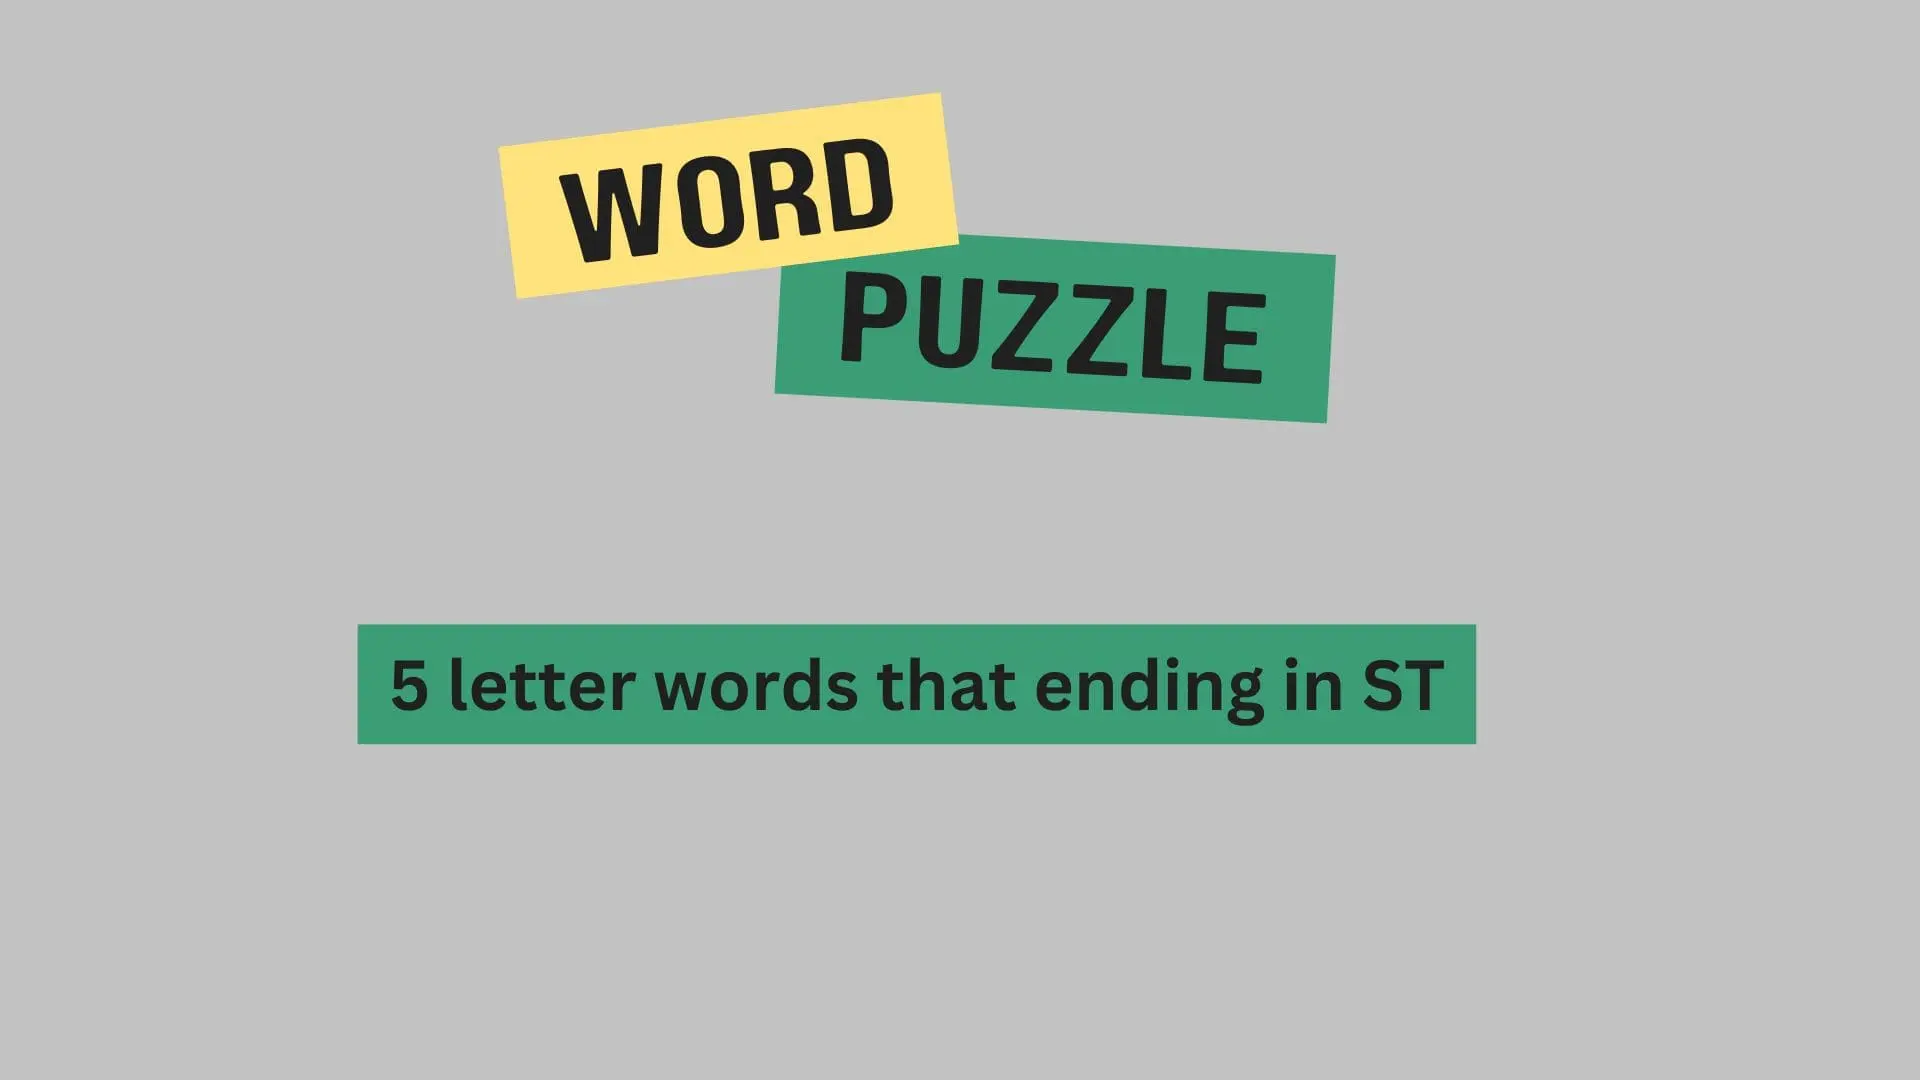 Explore the Chram of 5-letter words ending in ST